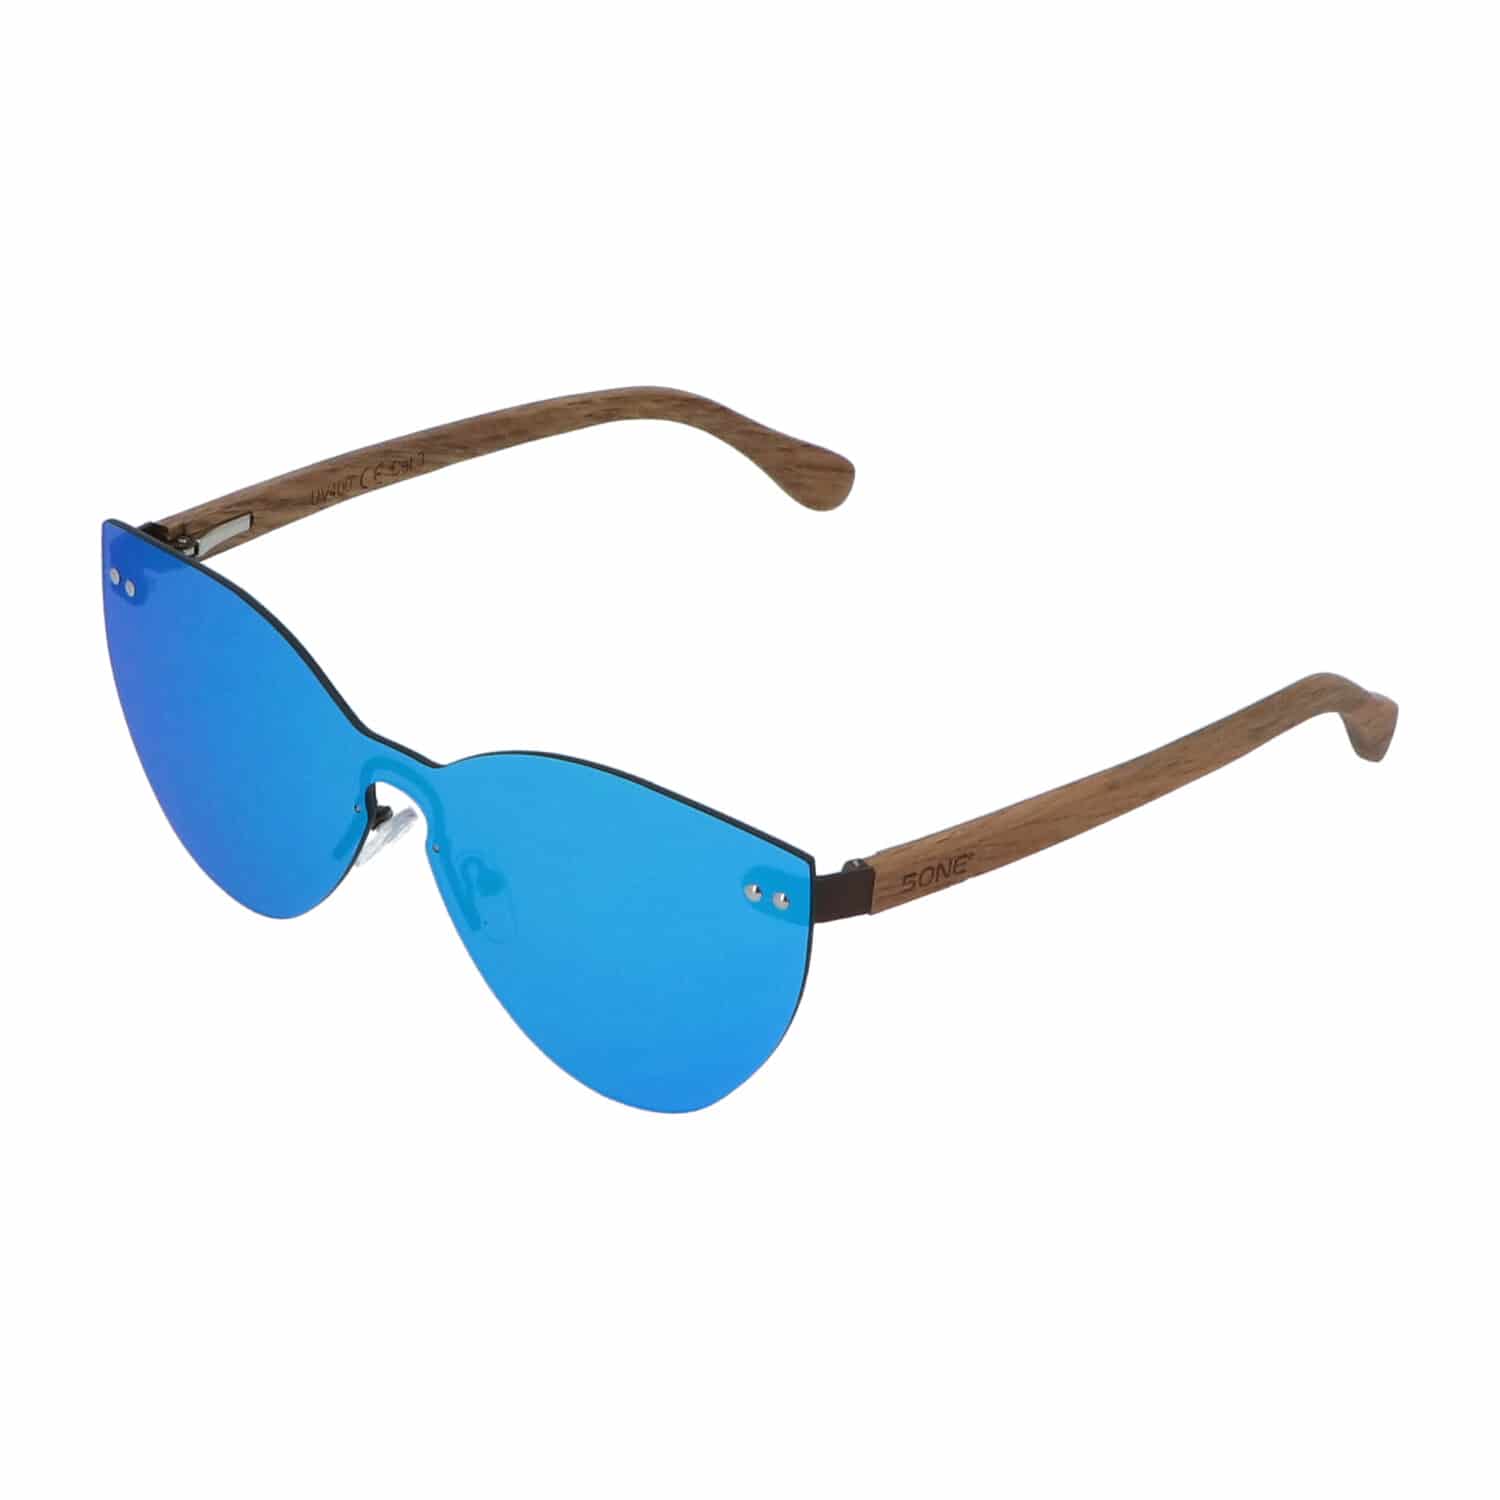 5one® Honolulu Butterfly Flat Ice Blue - Duwood hout zonnebril - blauw